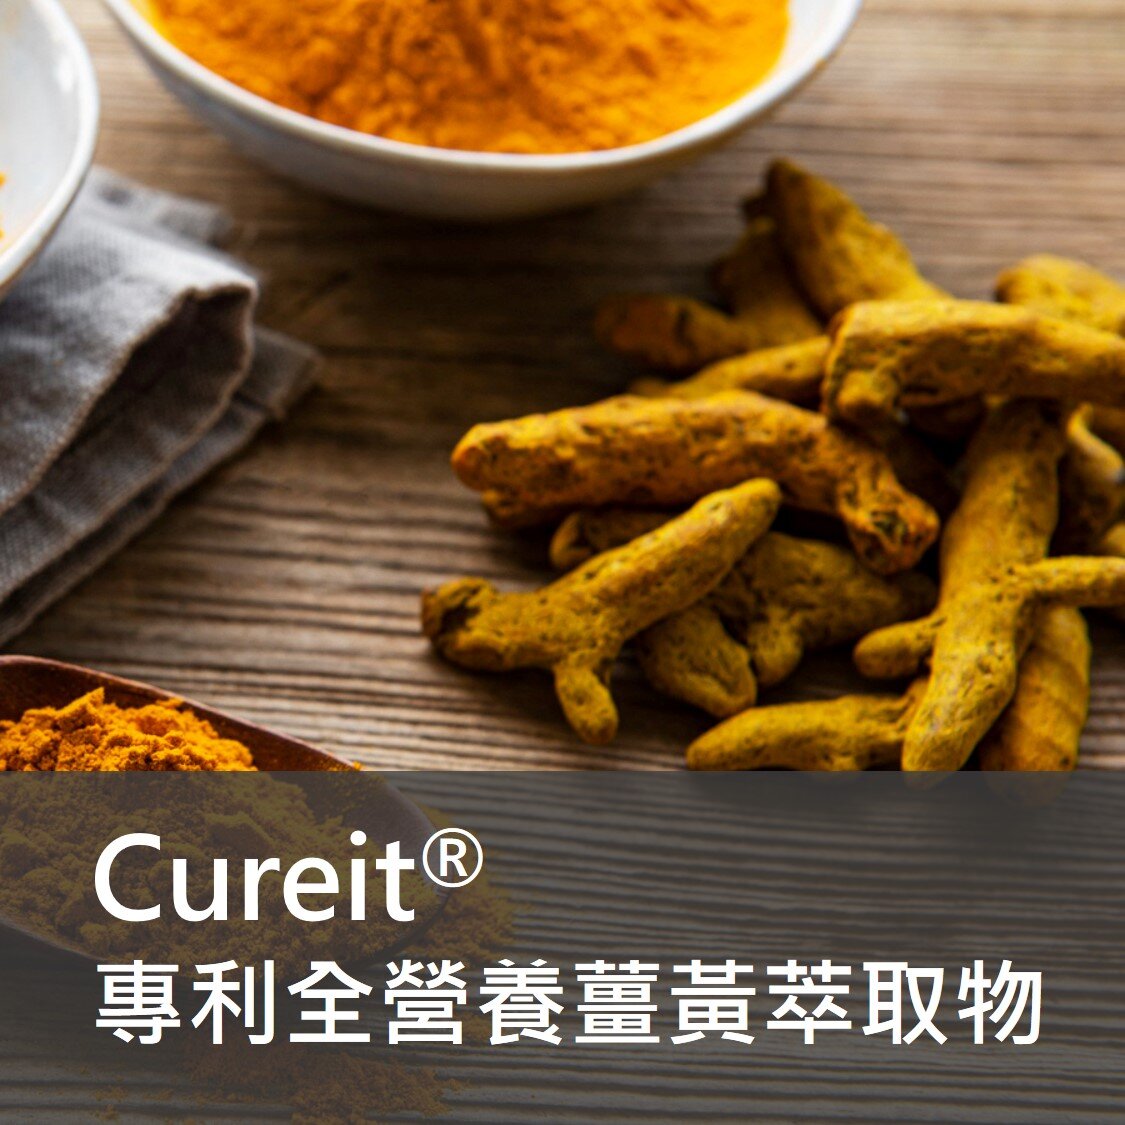 保健食品原料 - Cureit 專利 薑黃 萃取物